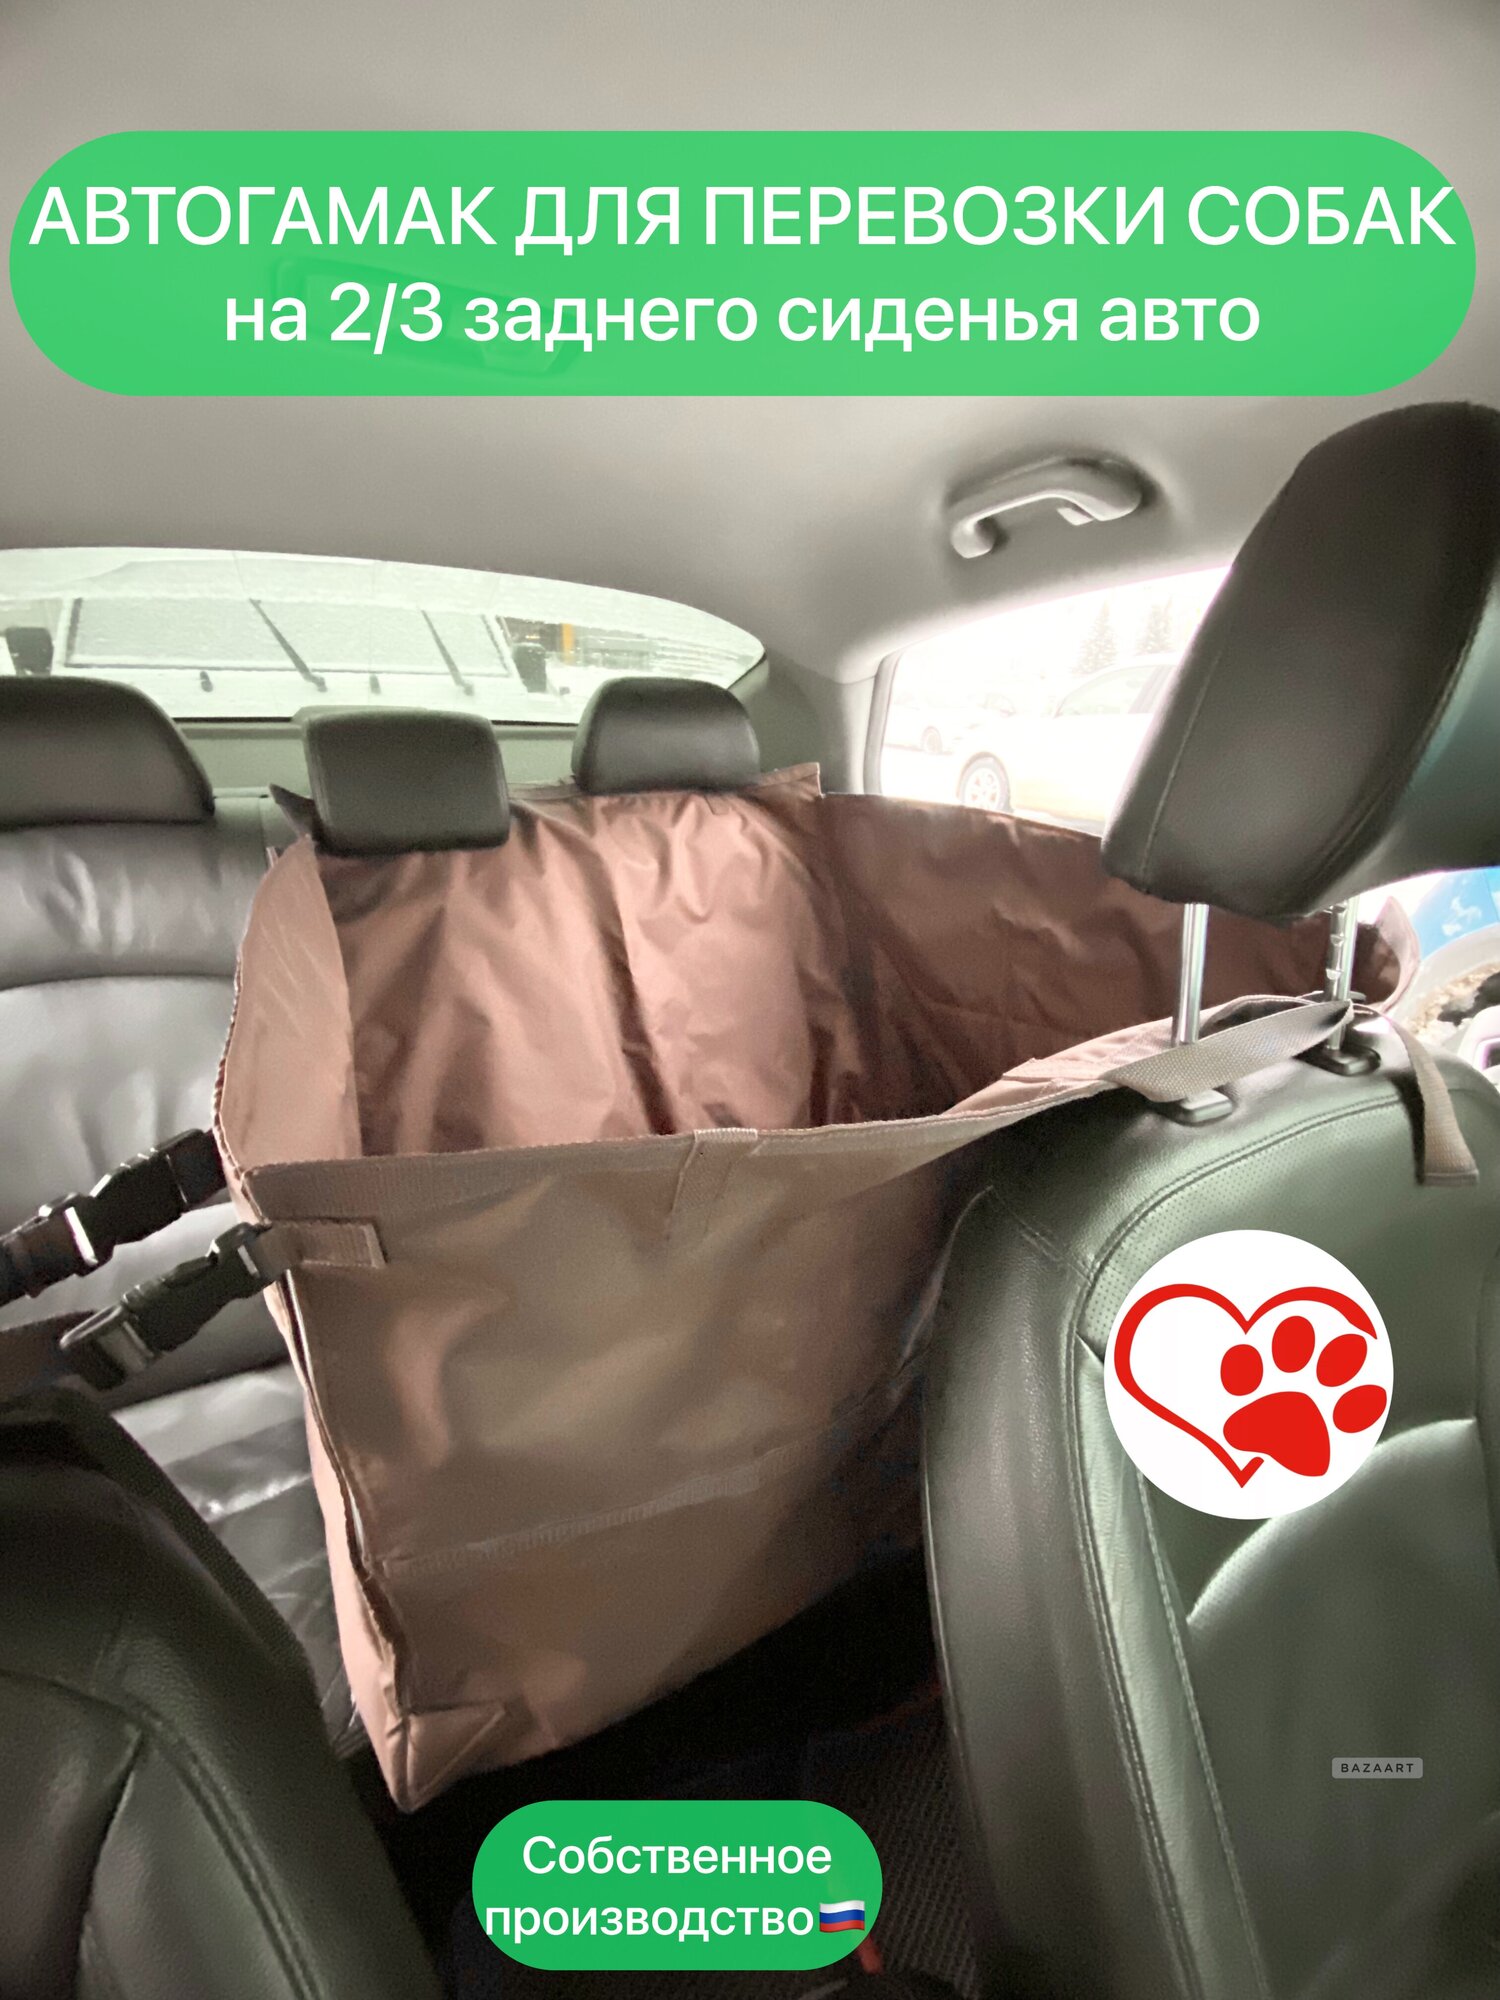 Автогамак для перевозки собак на 2/3 заднего сиденья авто. - фотография № 1